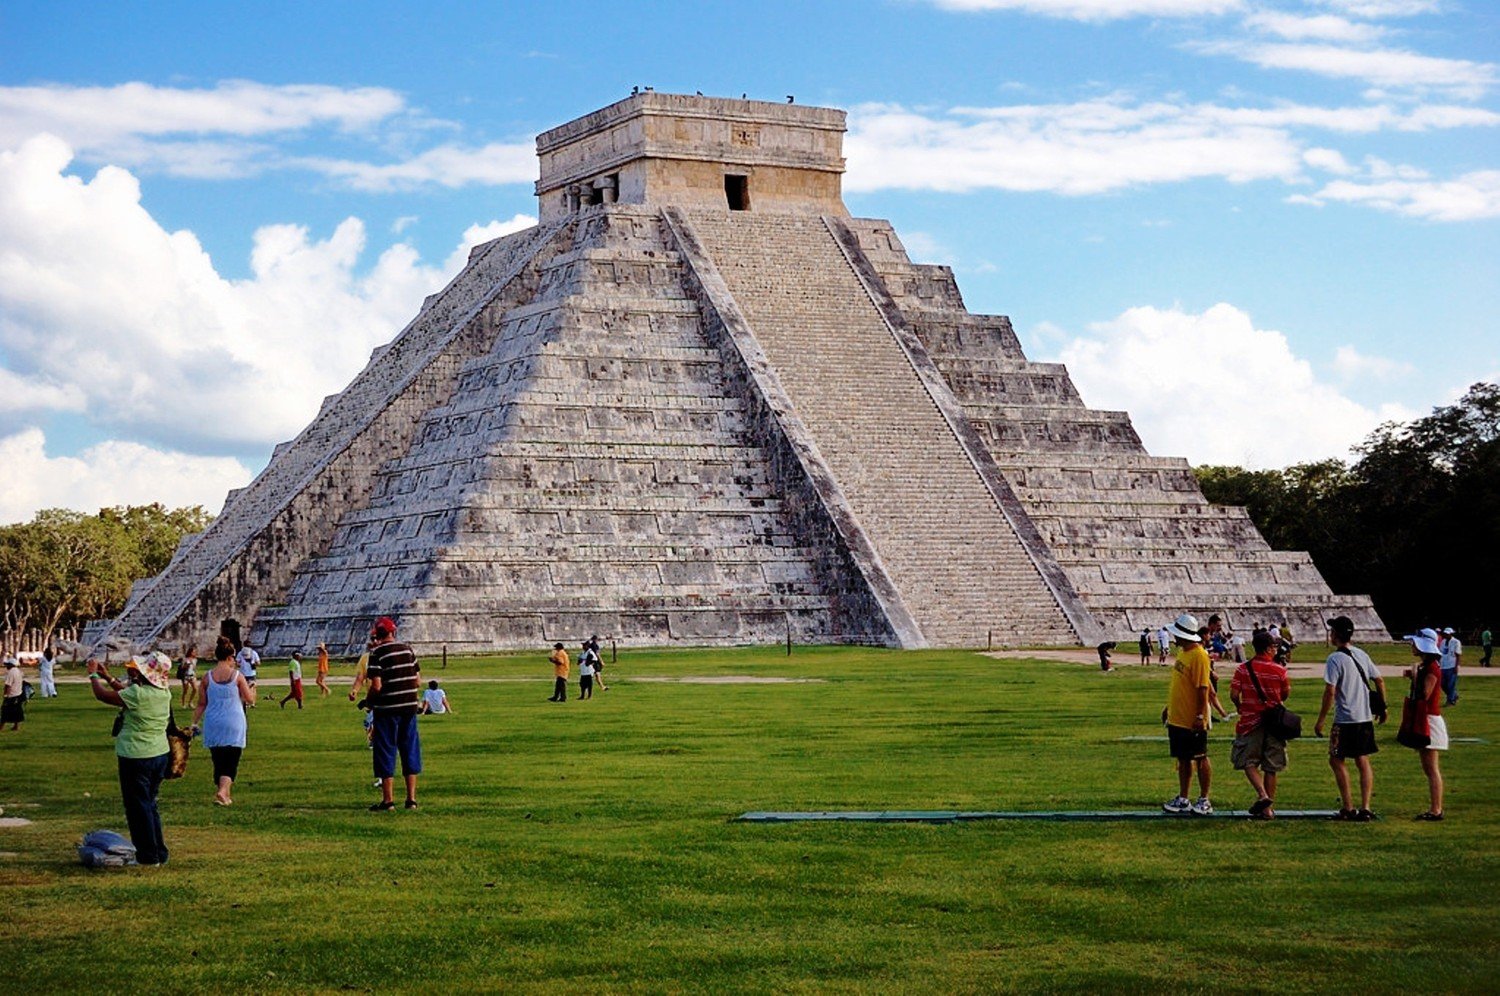 Город америка в мексике. Мексика Мехико Канкун. Чичен ица озеро. Мексика пирамиды Майя туристическое место. Мехико достопримечательности Мехико.